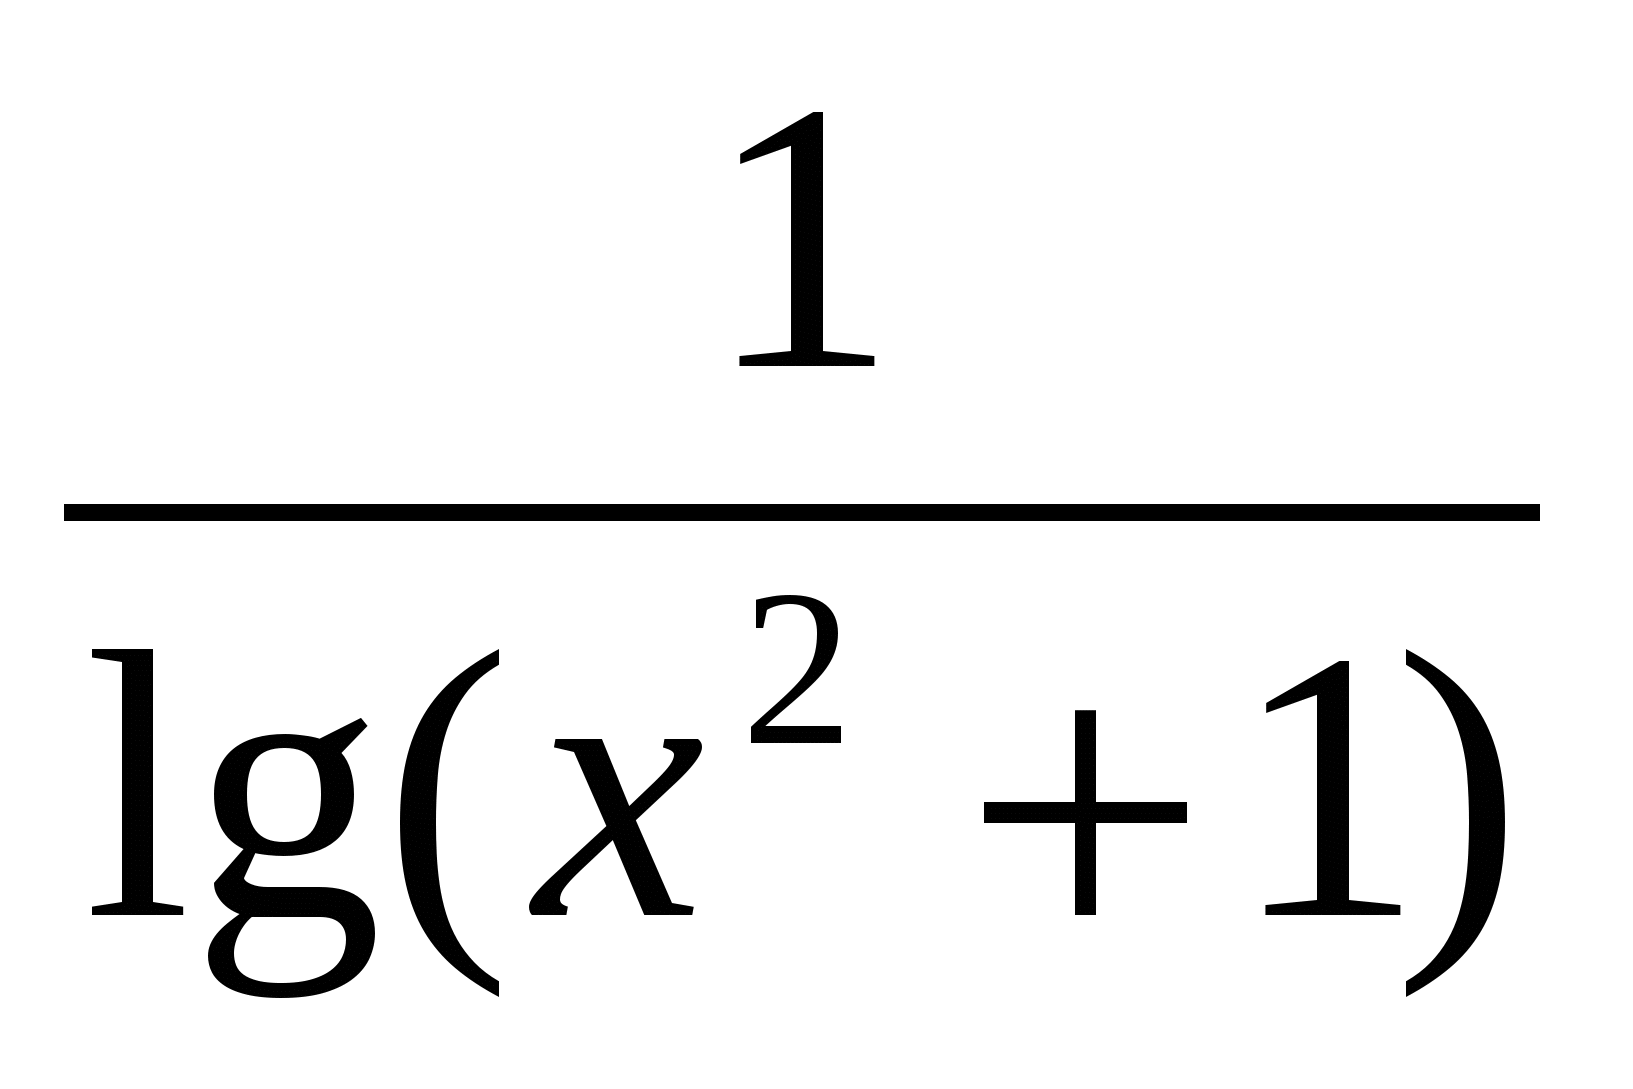 Конспект урока математики на тему Логарифмические уравнения (11 класс)